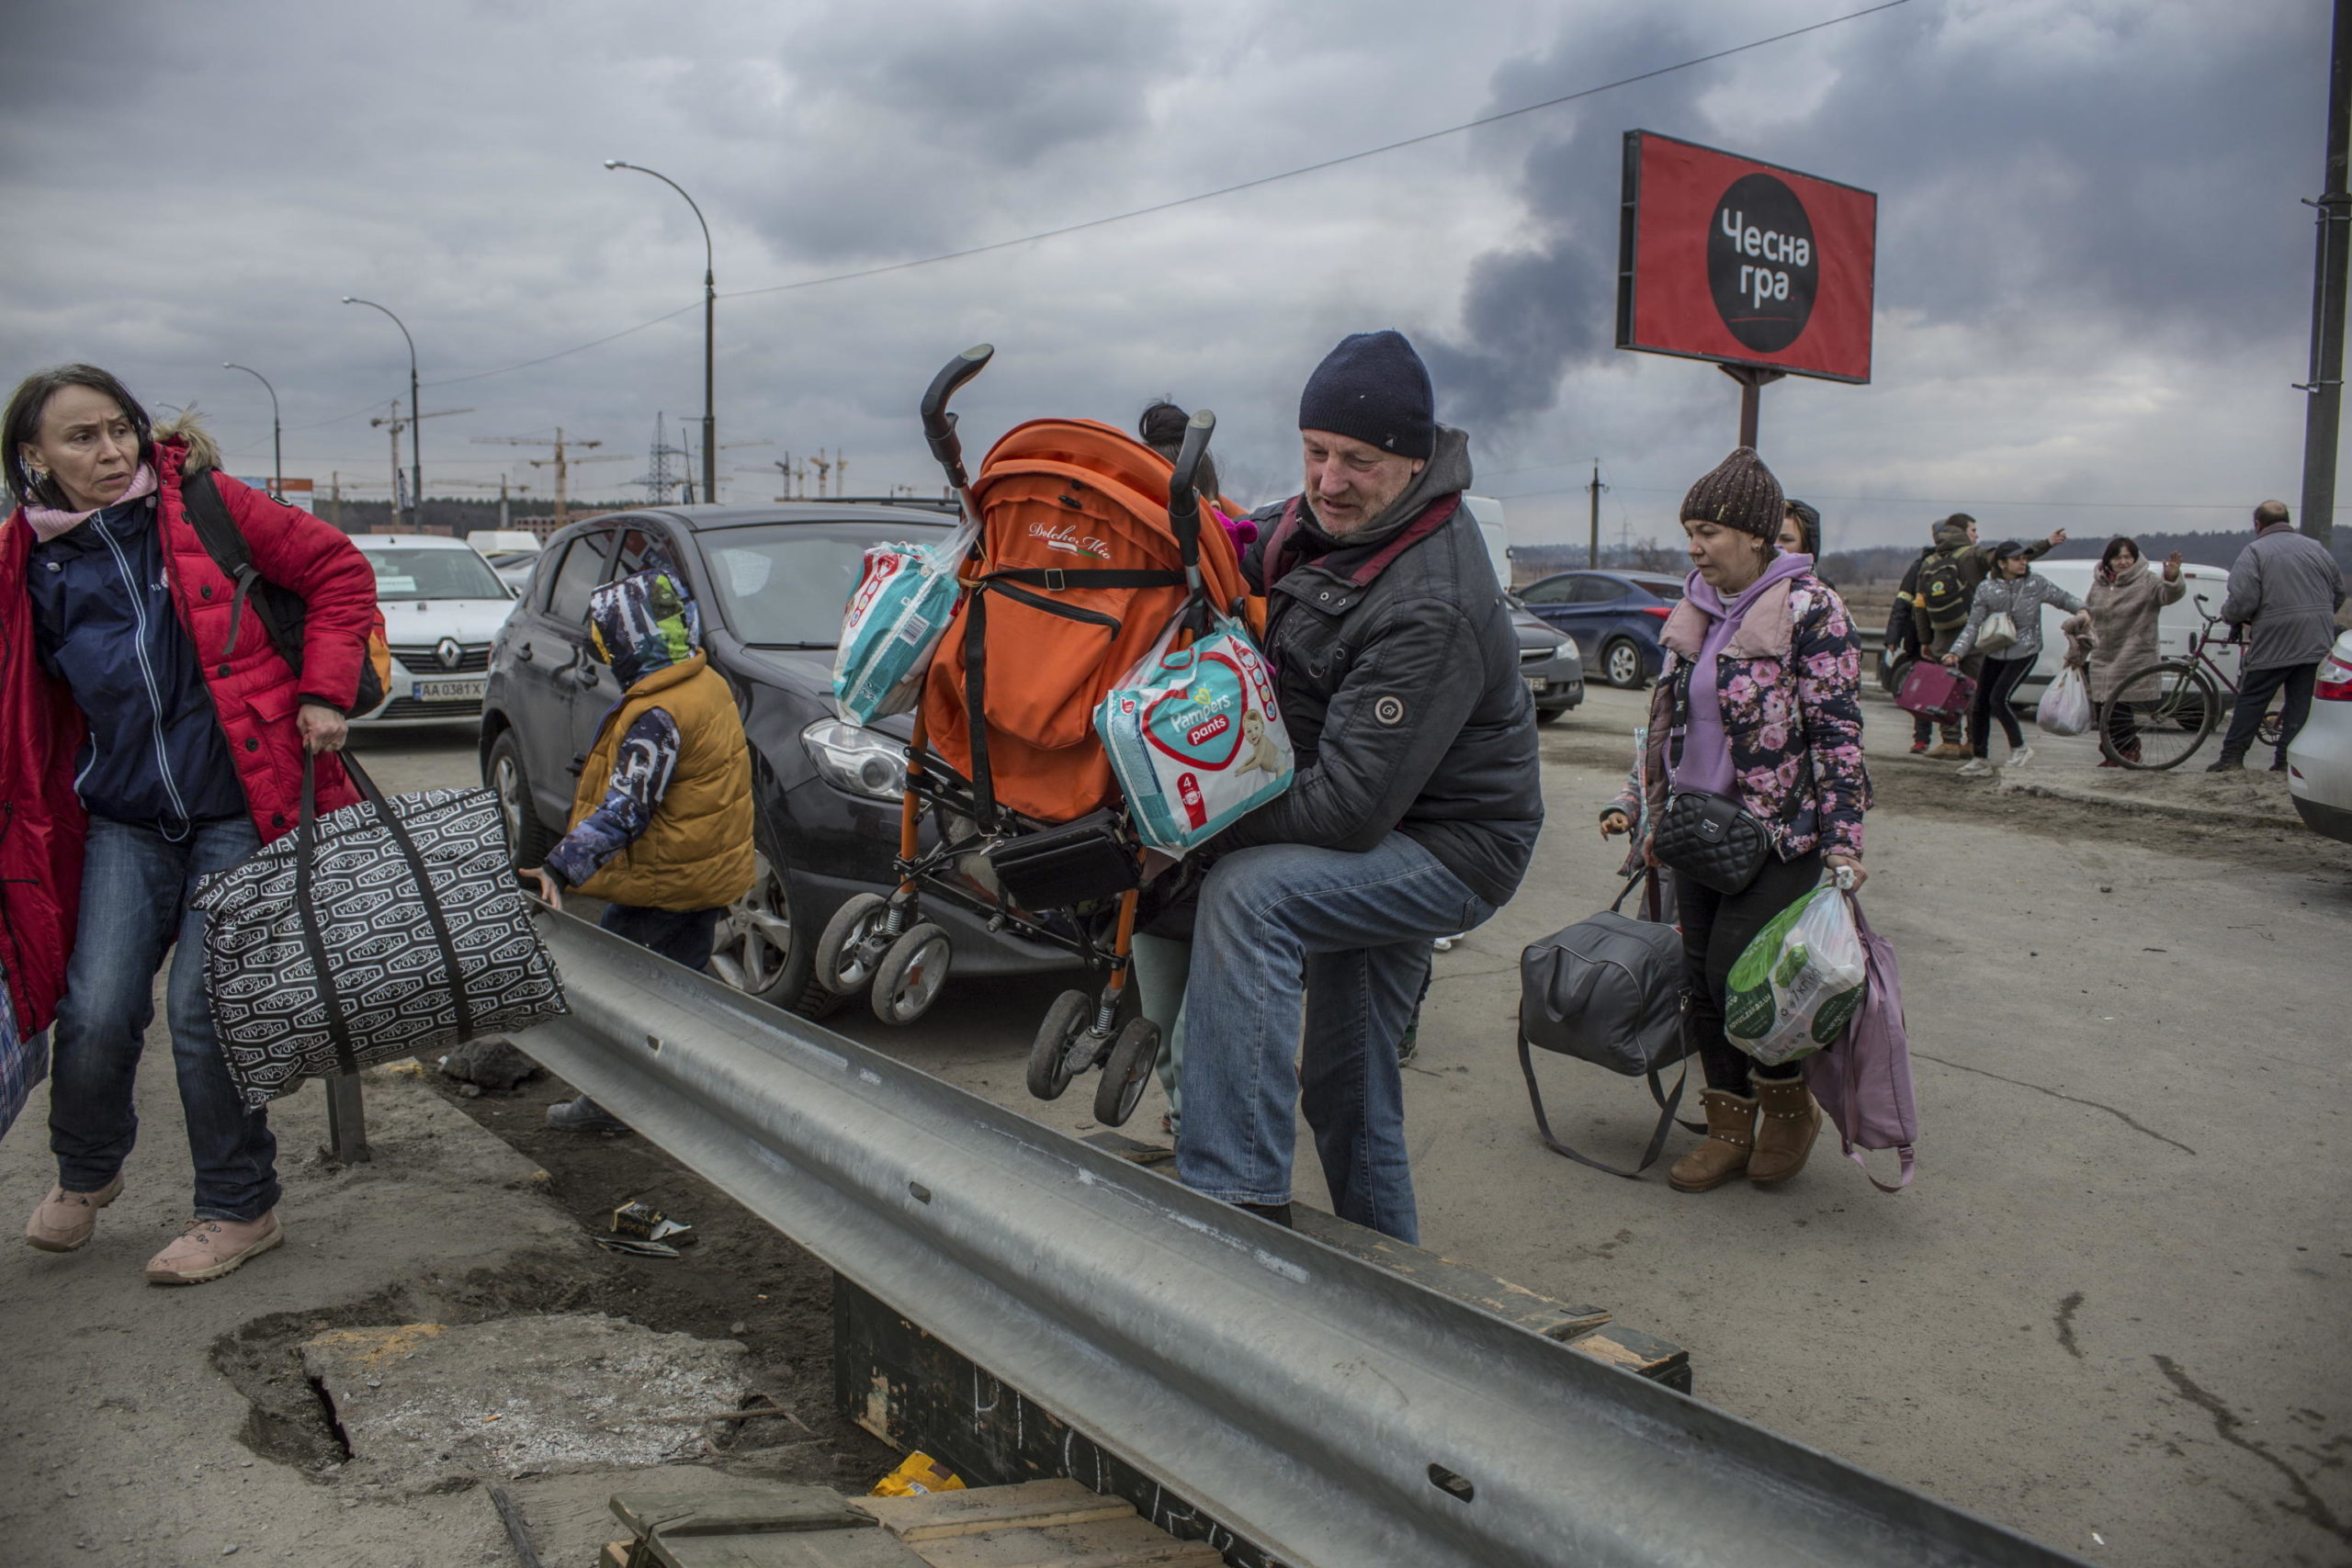 I civili attraversano le macerie di un ponte danneggiato nella città di Irpin vicino a Kiev